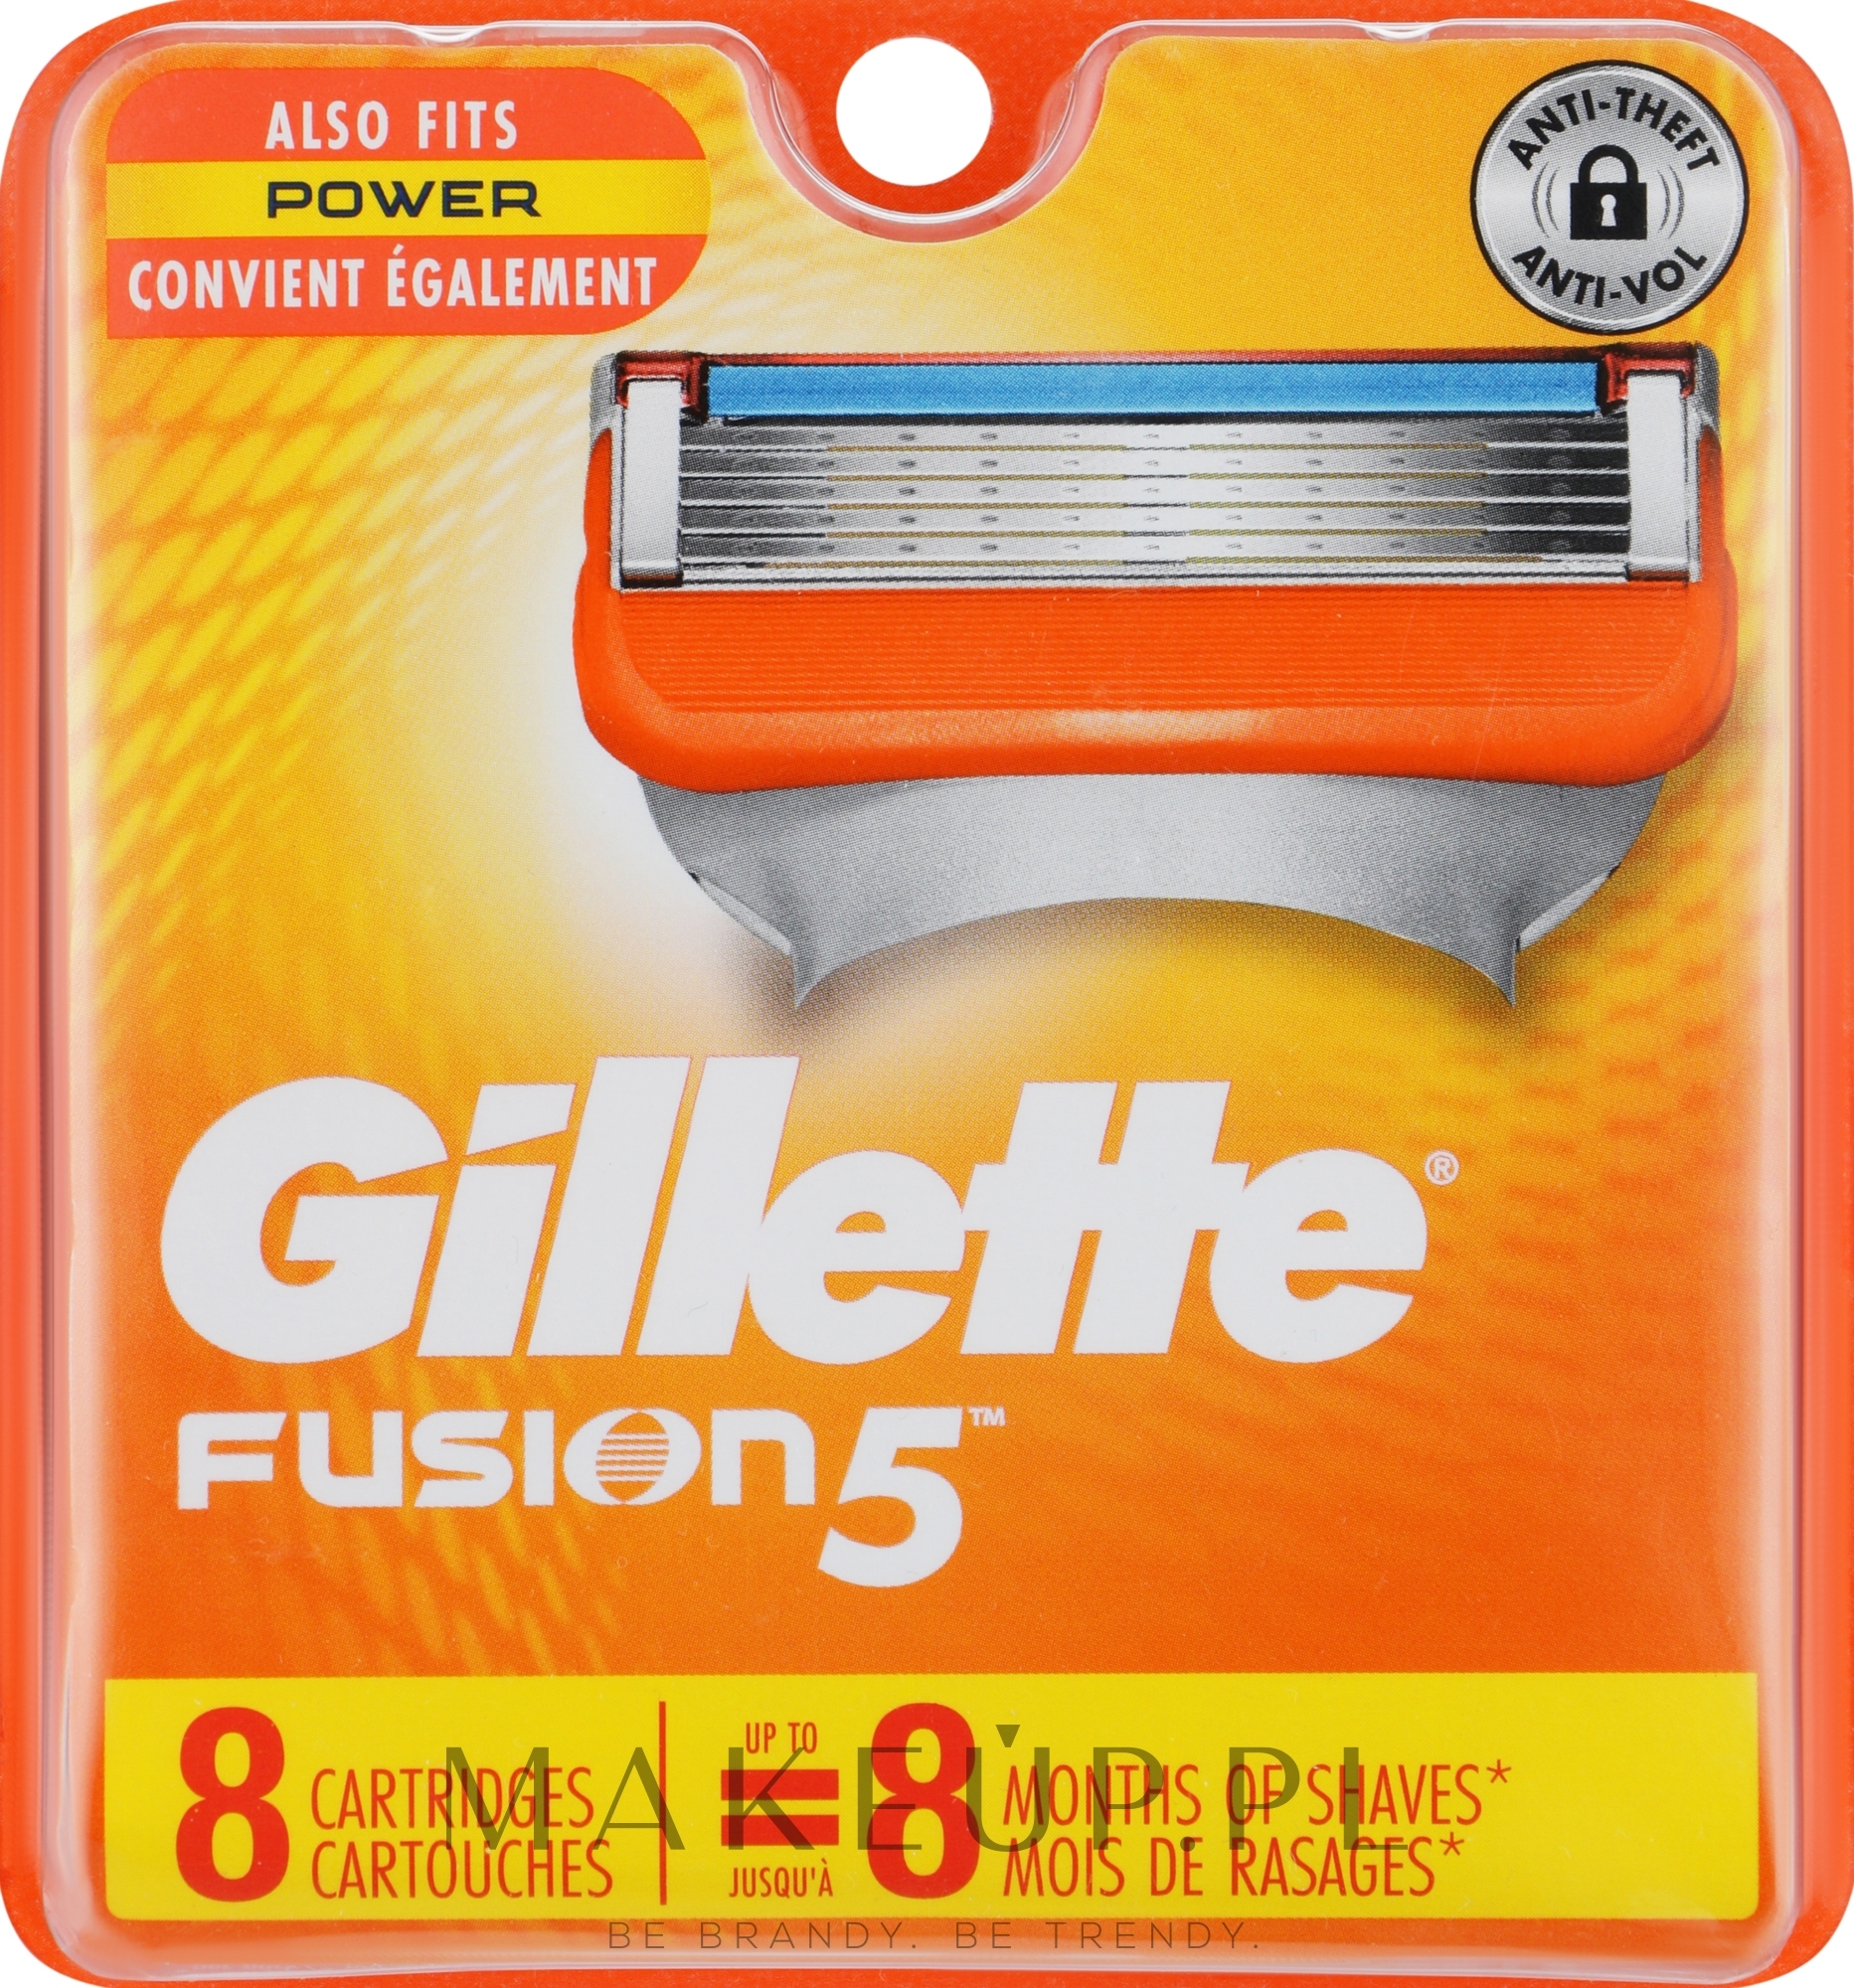 Wymienne wkłady do maszynki, 8 szt. - Gillette Fusion Power — Zdjęcie 8 szt.